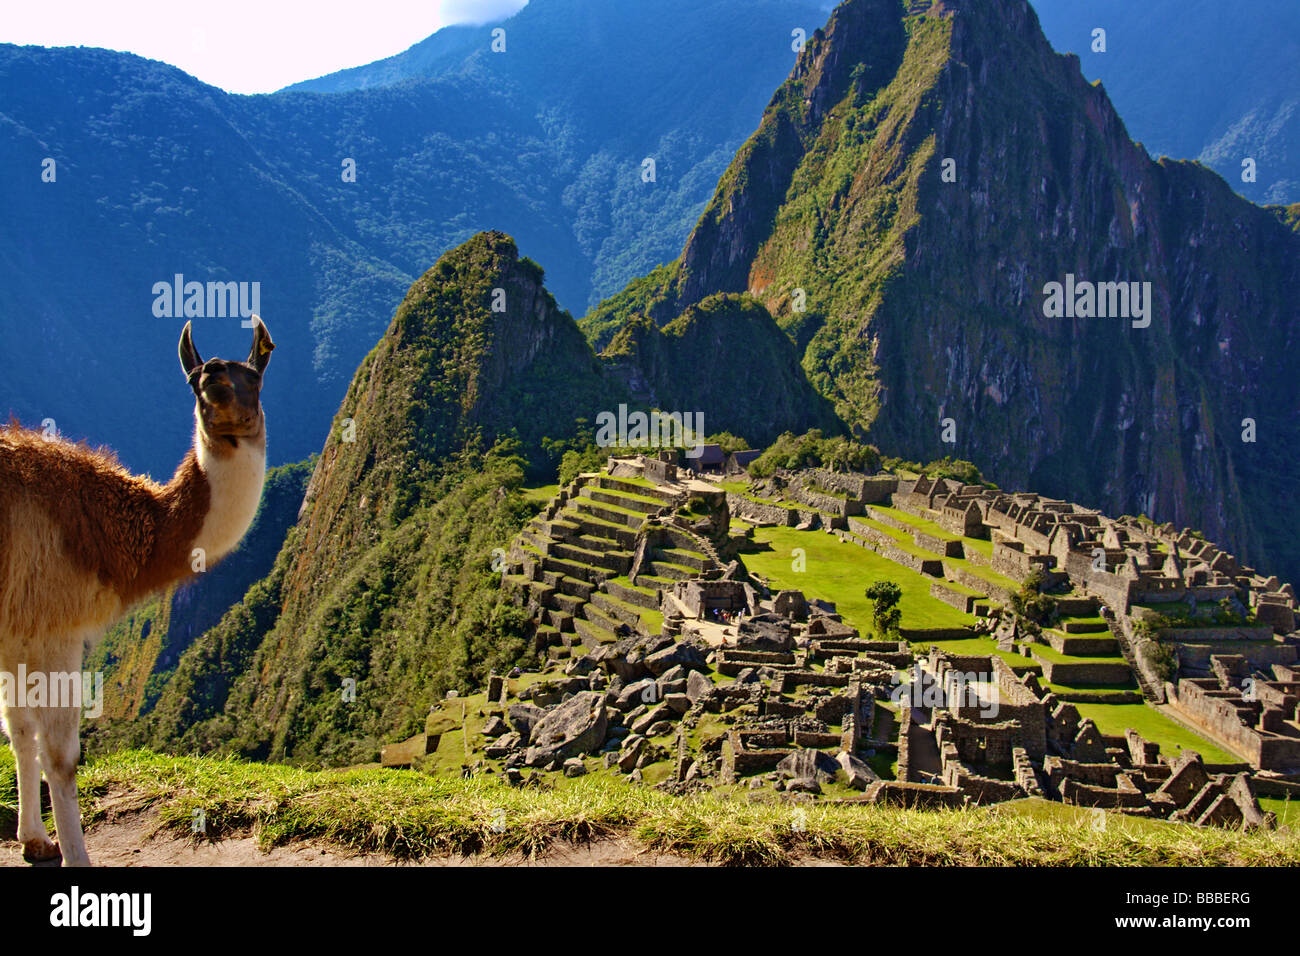 Llama at Machu Picchu Peru South America Inca ruins Stock Photo